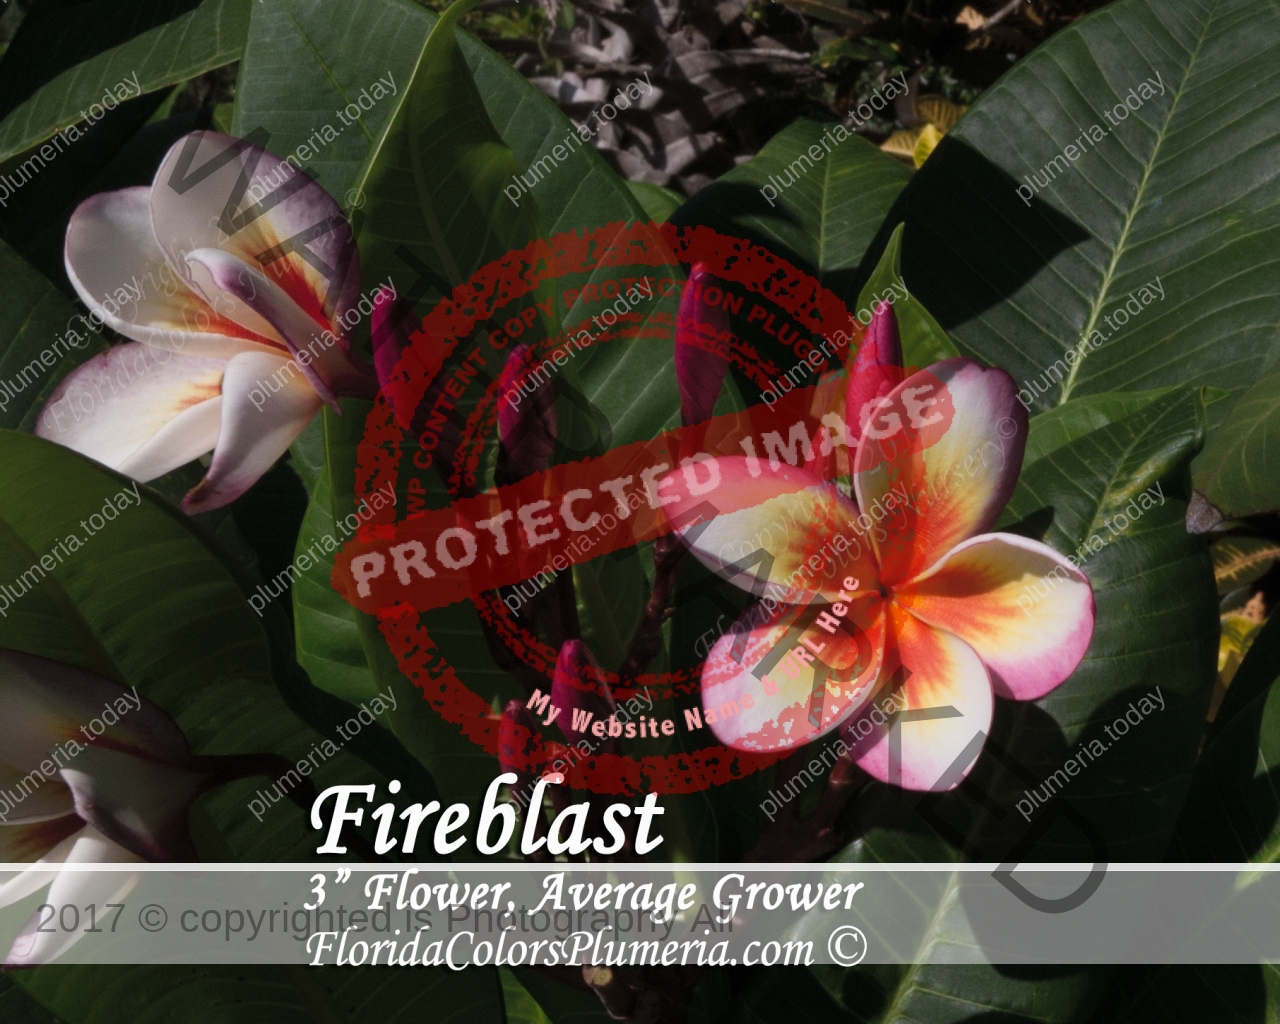 Fireblast_1129.jpg